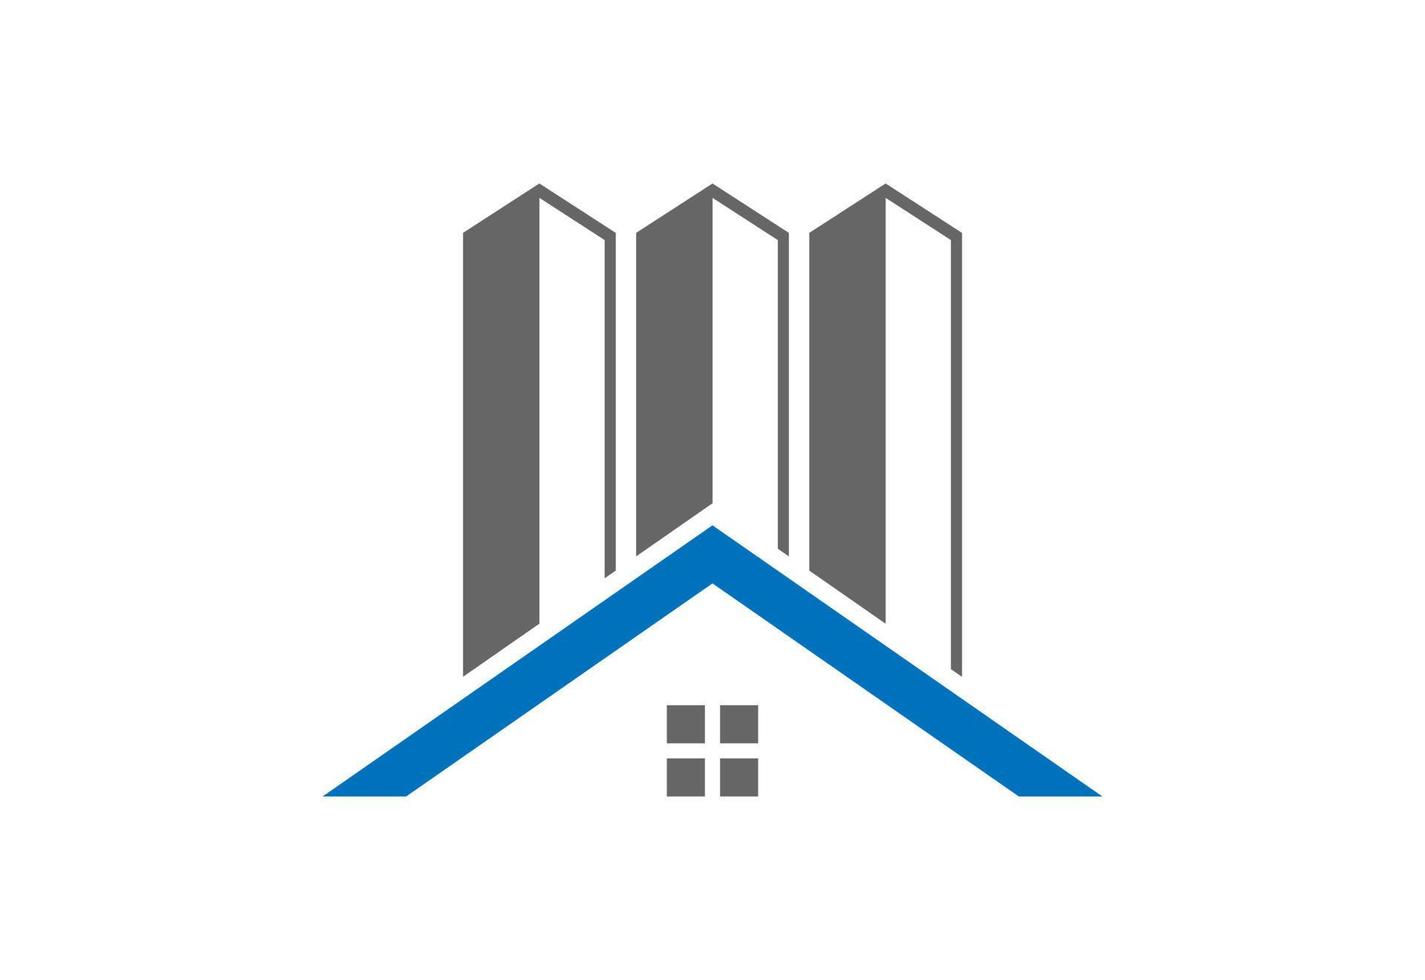 Immobilien-Haus-Logo-Design, Vektor-Design-Konzept vektor